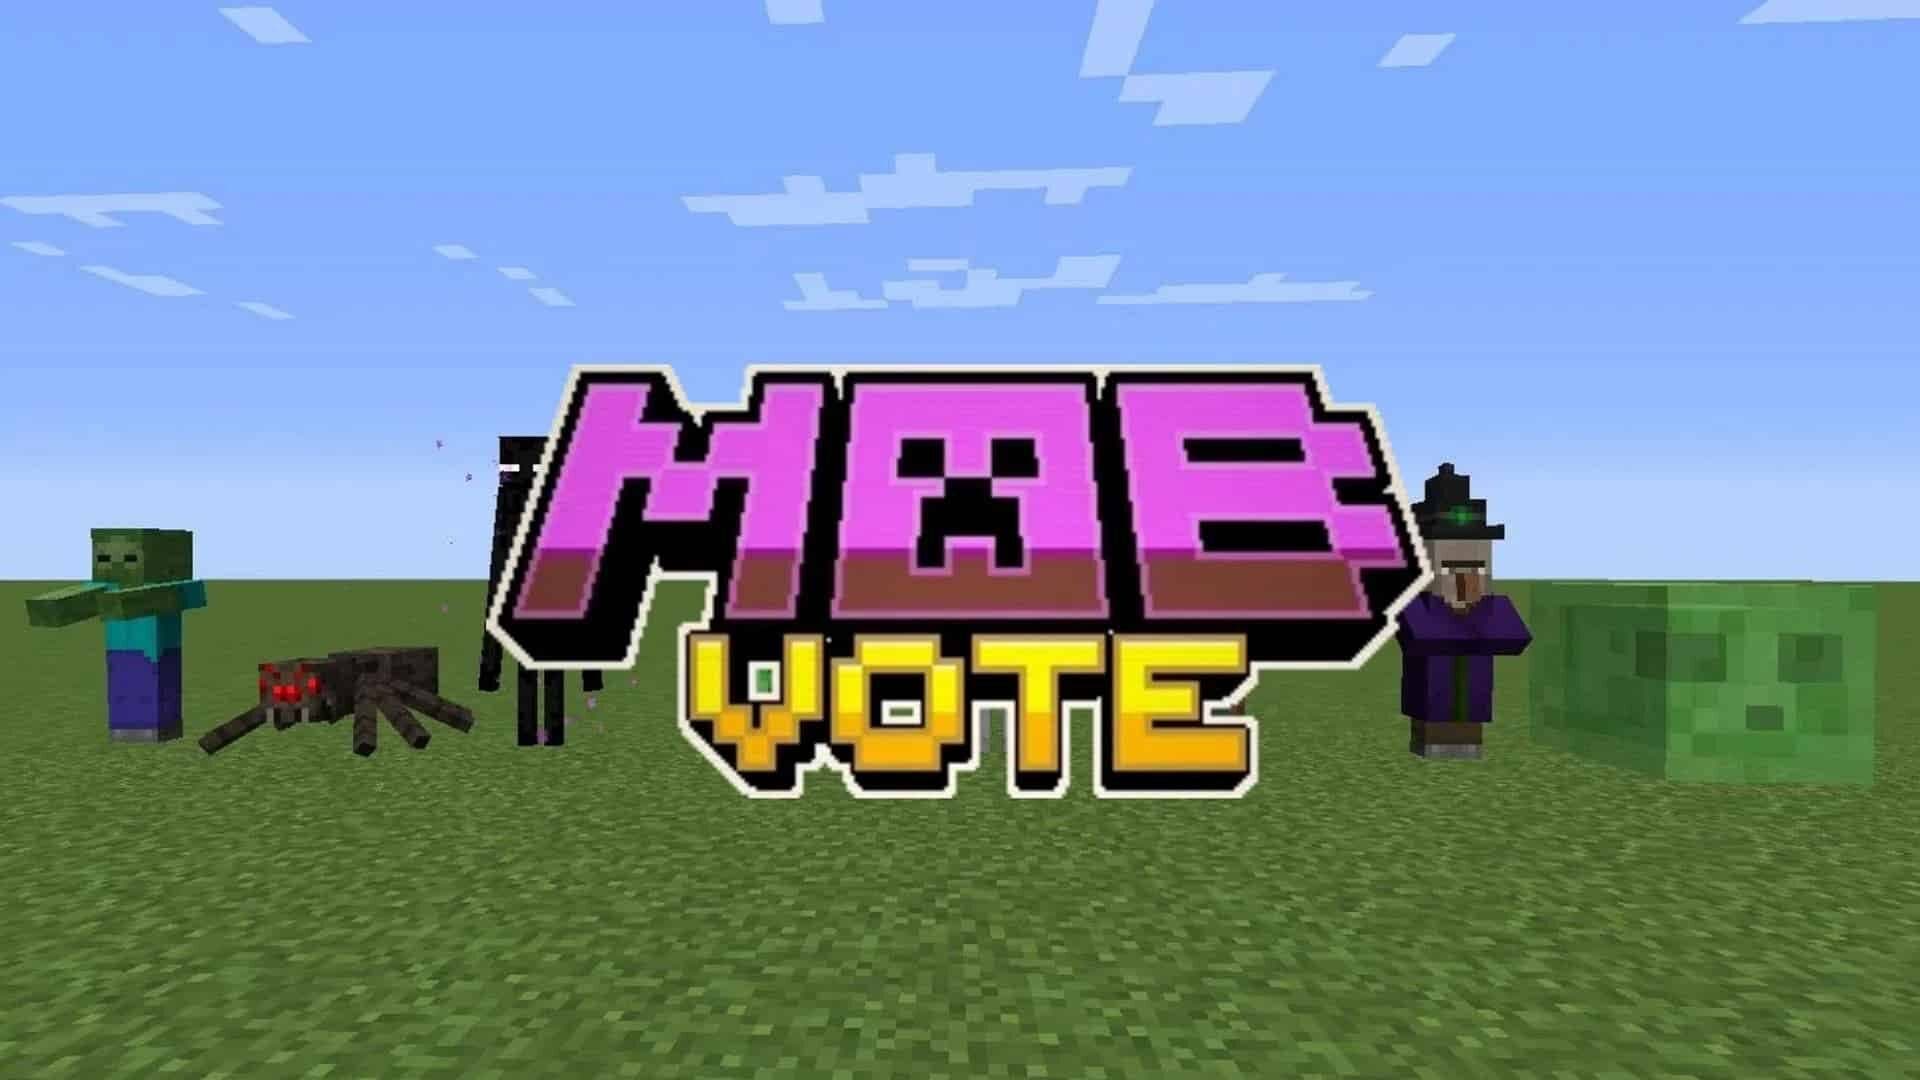 Minecraft ha presentado al Sniffer, un nuevo mob para la votación de mobs